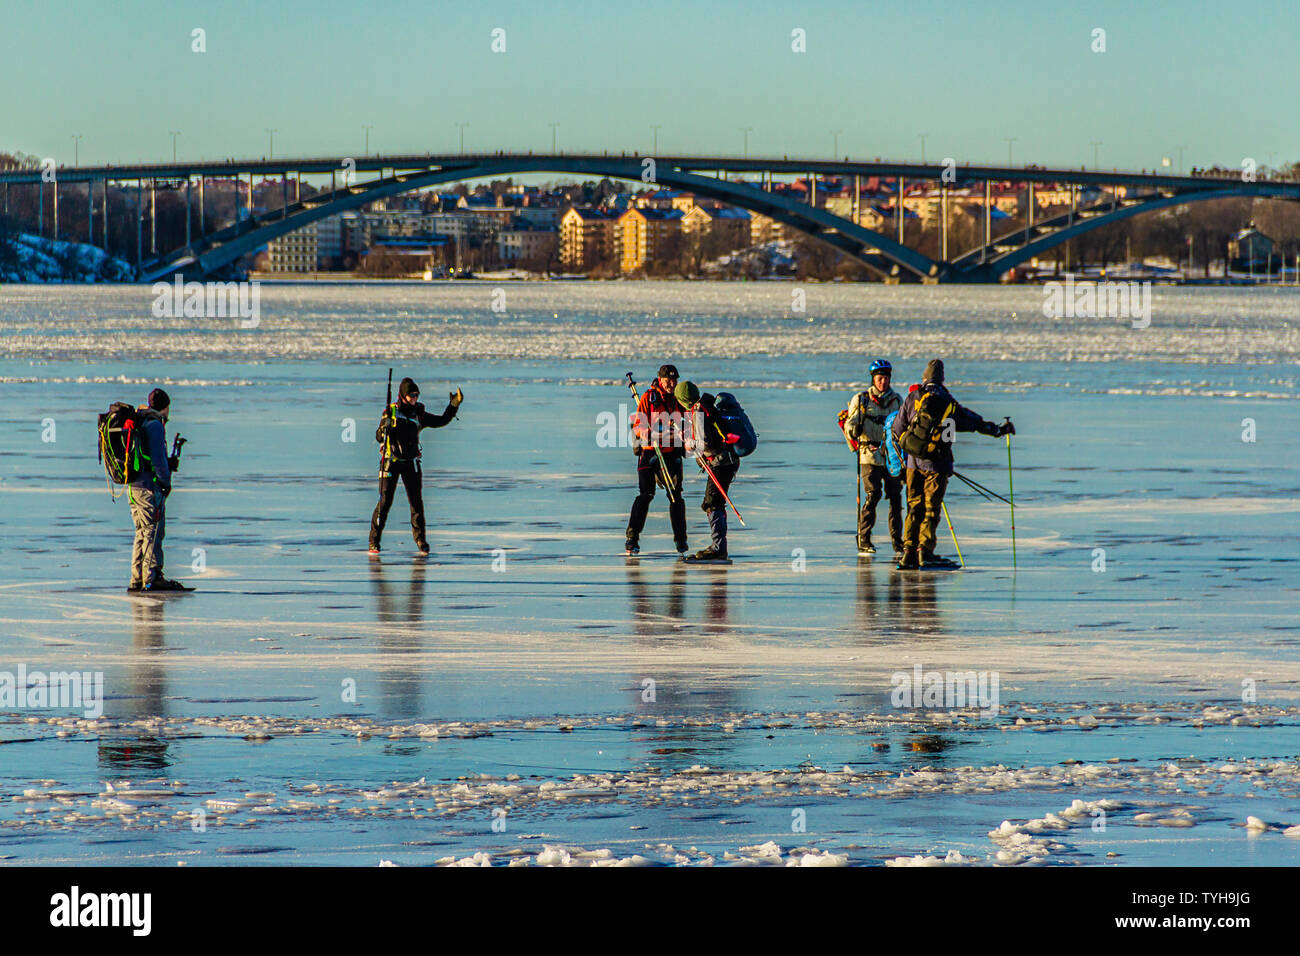 Eine Gruppe von schlittschuhläufer auf den Riddarfjärd, einer Bucht des Sees Malaren, mit dem Vasterbron West Bridge hinter sich. Stockholm, Schweden. Januar 2019. Stockfoto